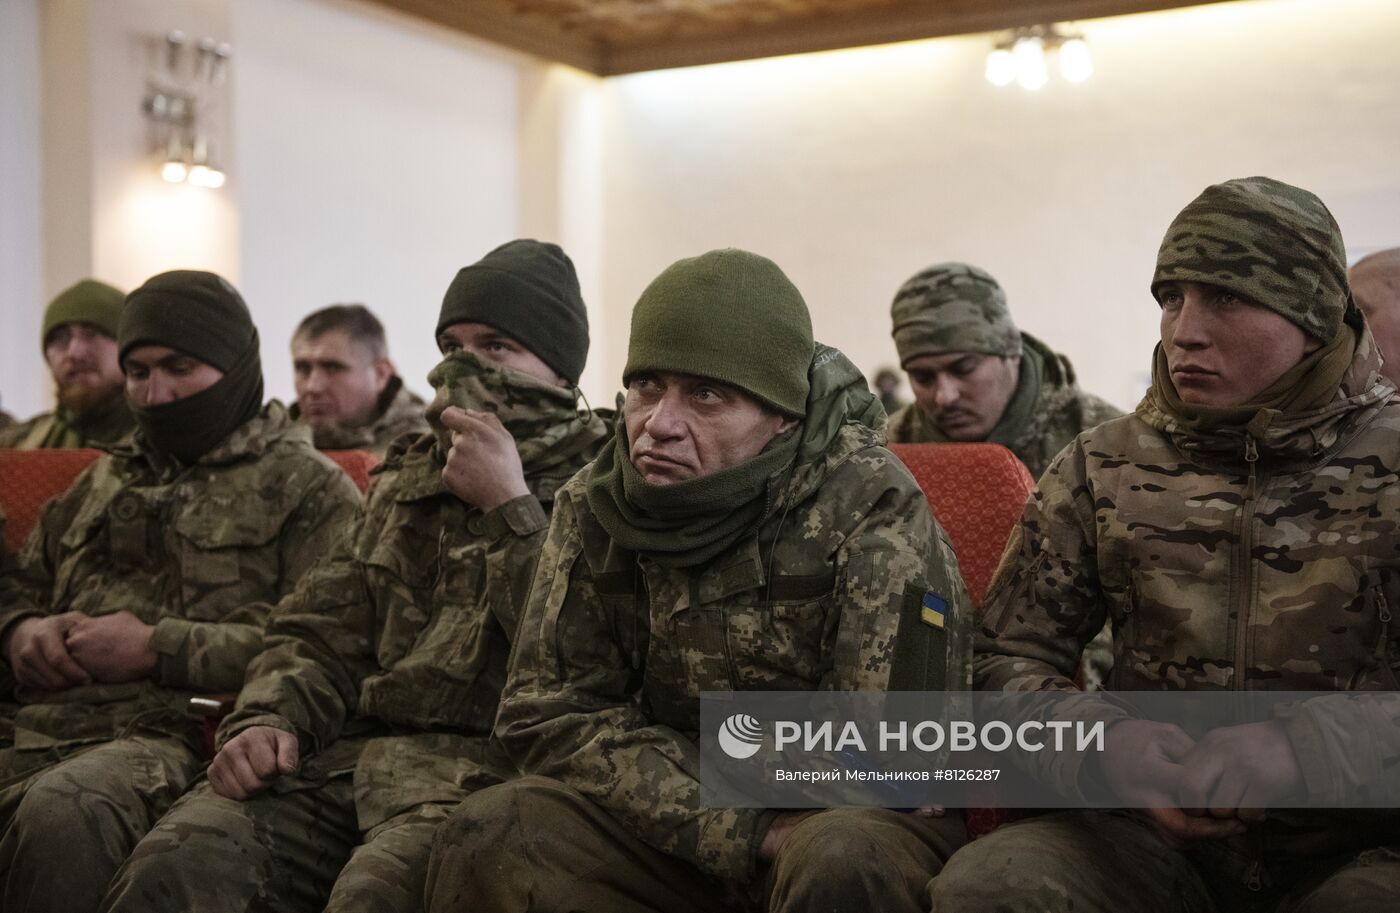 الولايات المتحدة وبريطانيا استخدمتا سلسلة ألعاب عسكرية في خطة الهجوم الأوكراني المضاد